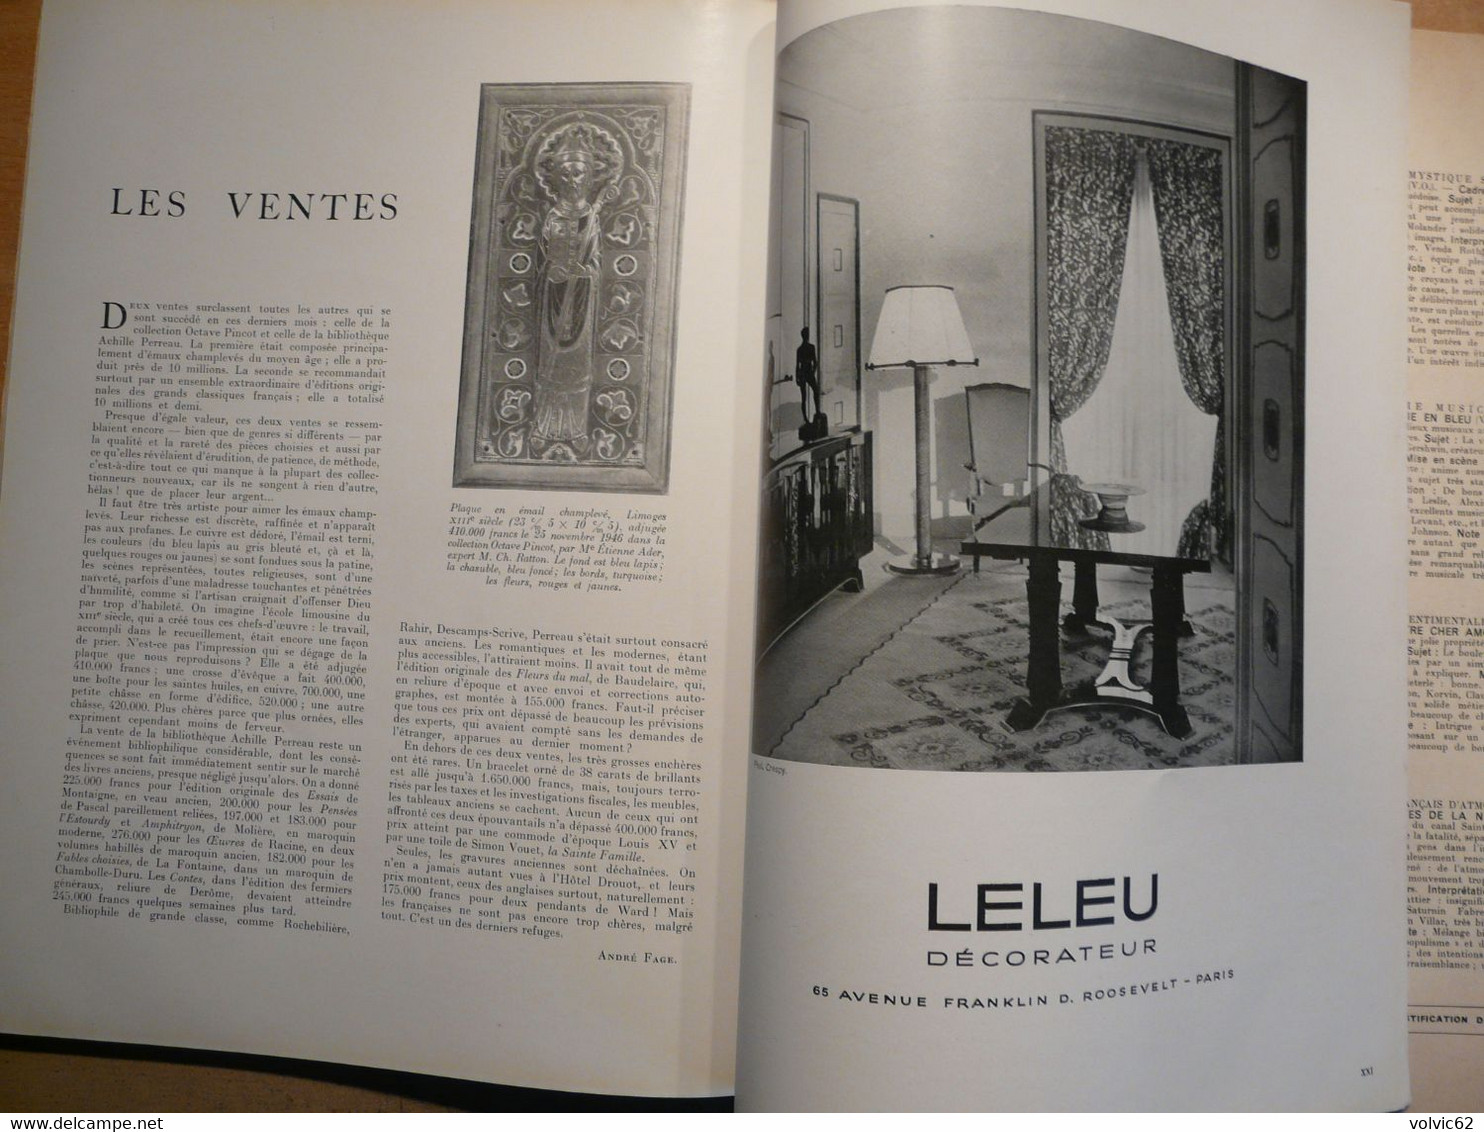 Plaisir de france 1947 chaise dieu chateau castries mime marceau hospice beaune bourgogne décoration moderne